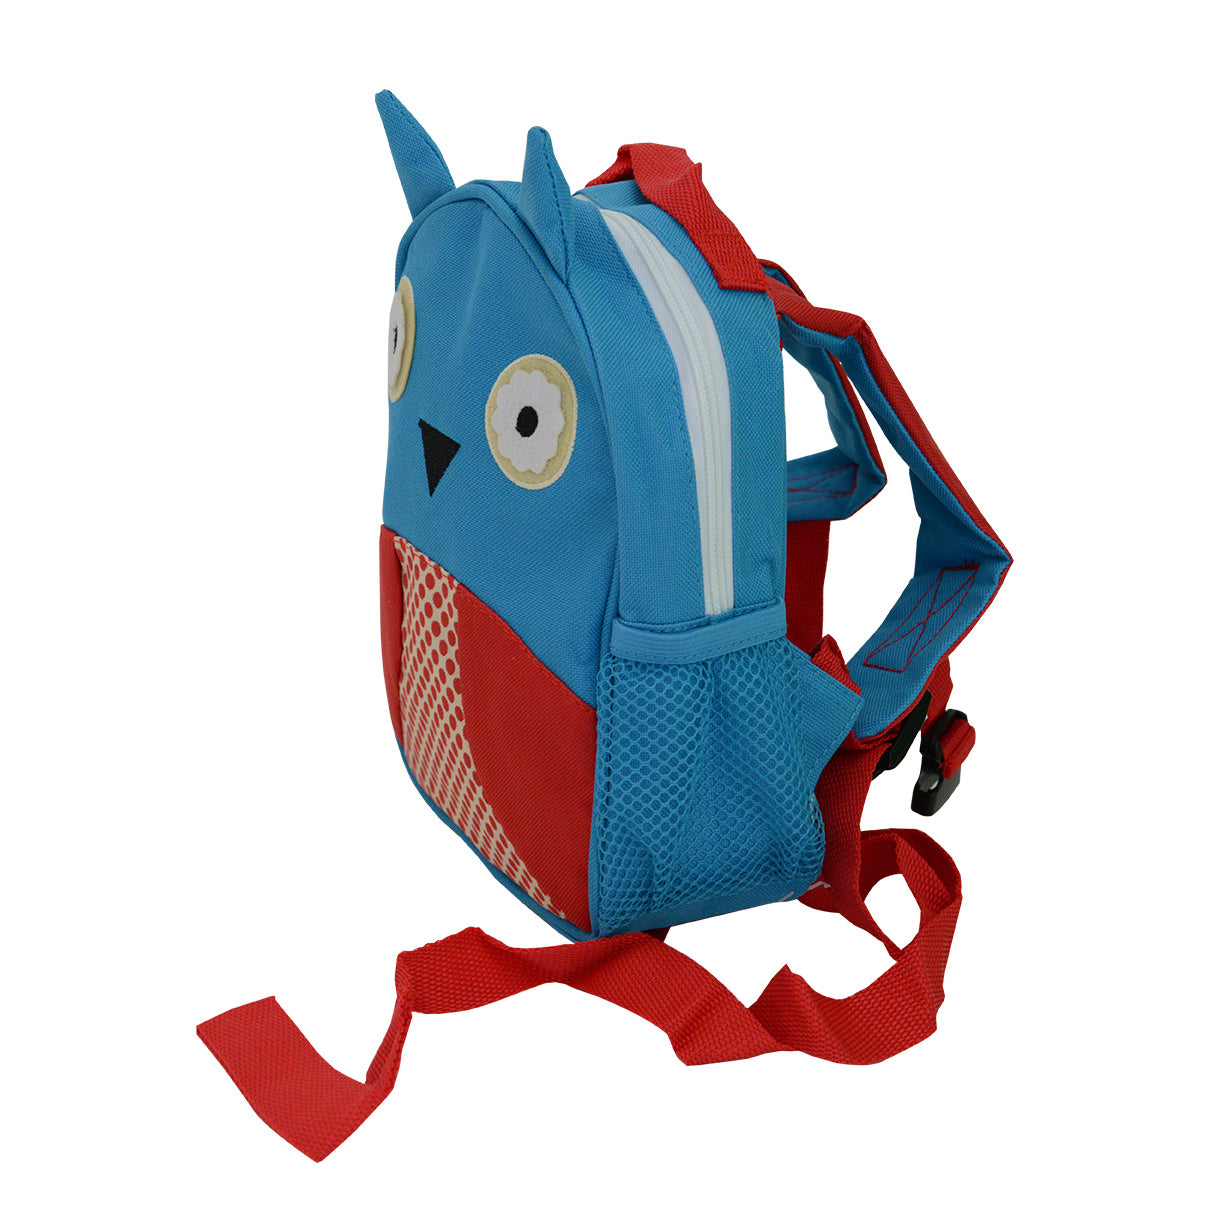 Snuggletime Mini Backpack